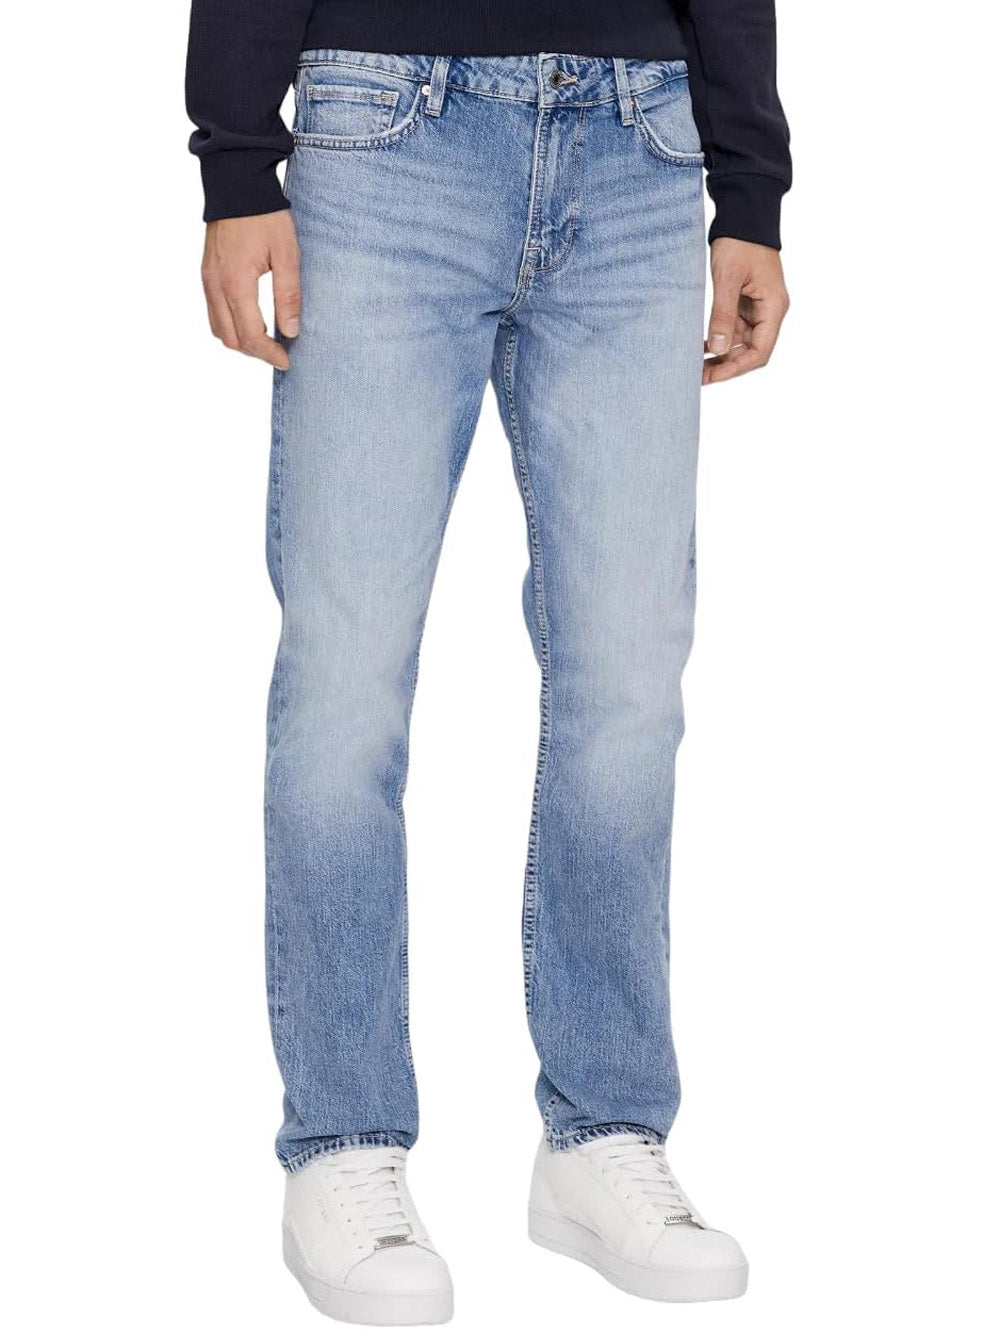 GUESS Jeans Uomo - Nero modello M4RAS2D58M3